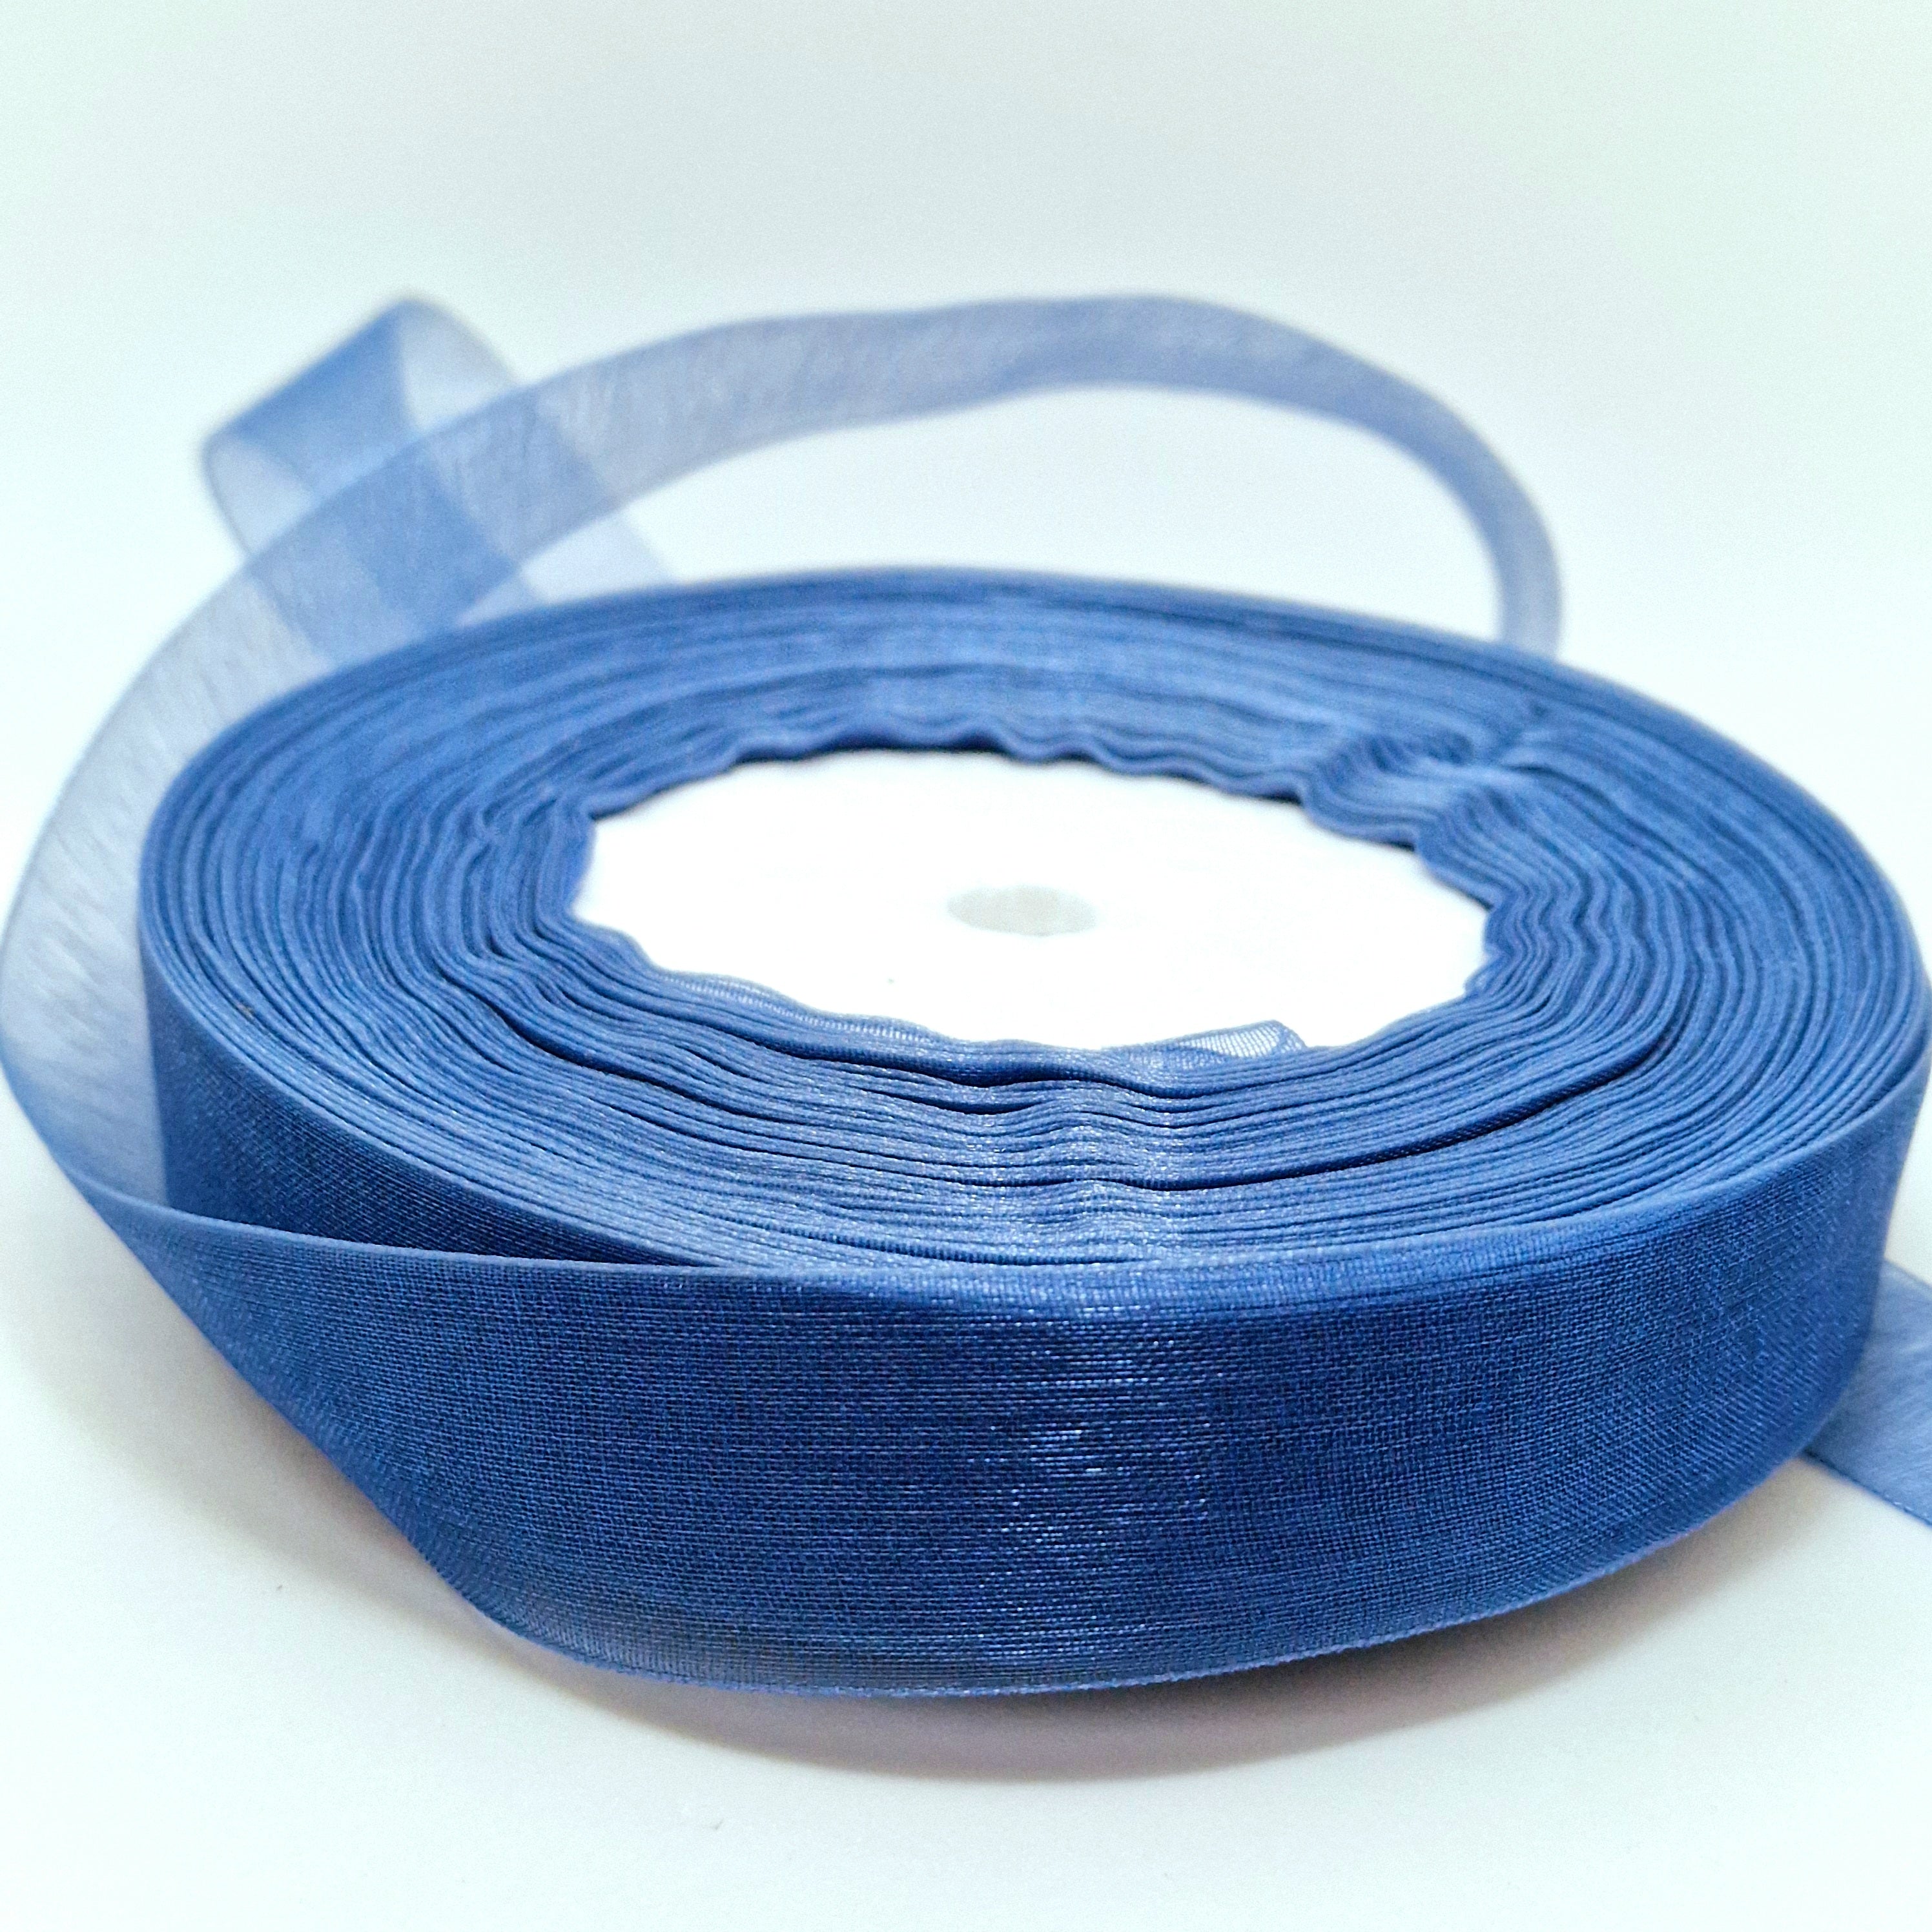 MajorCrafts 20mm 45metres Washed Blue Sheer Organza Fabric Ribbon Roll R1070